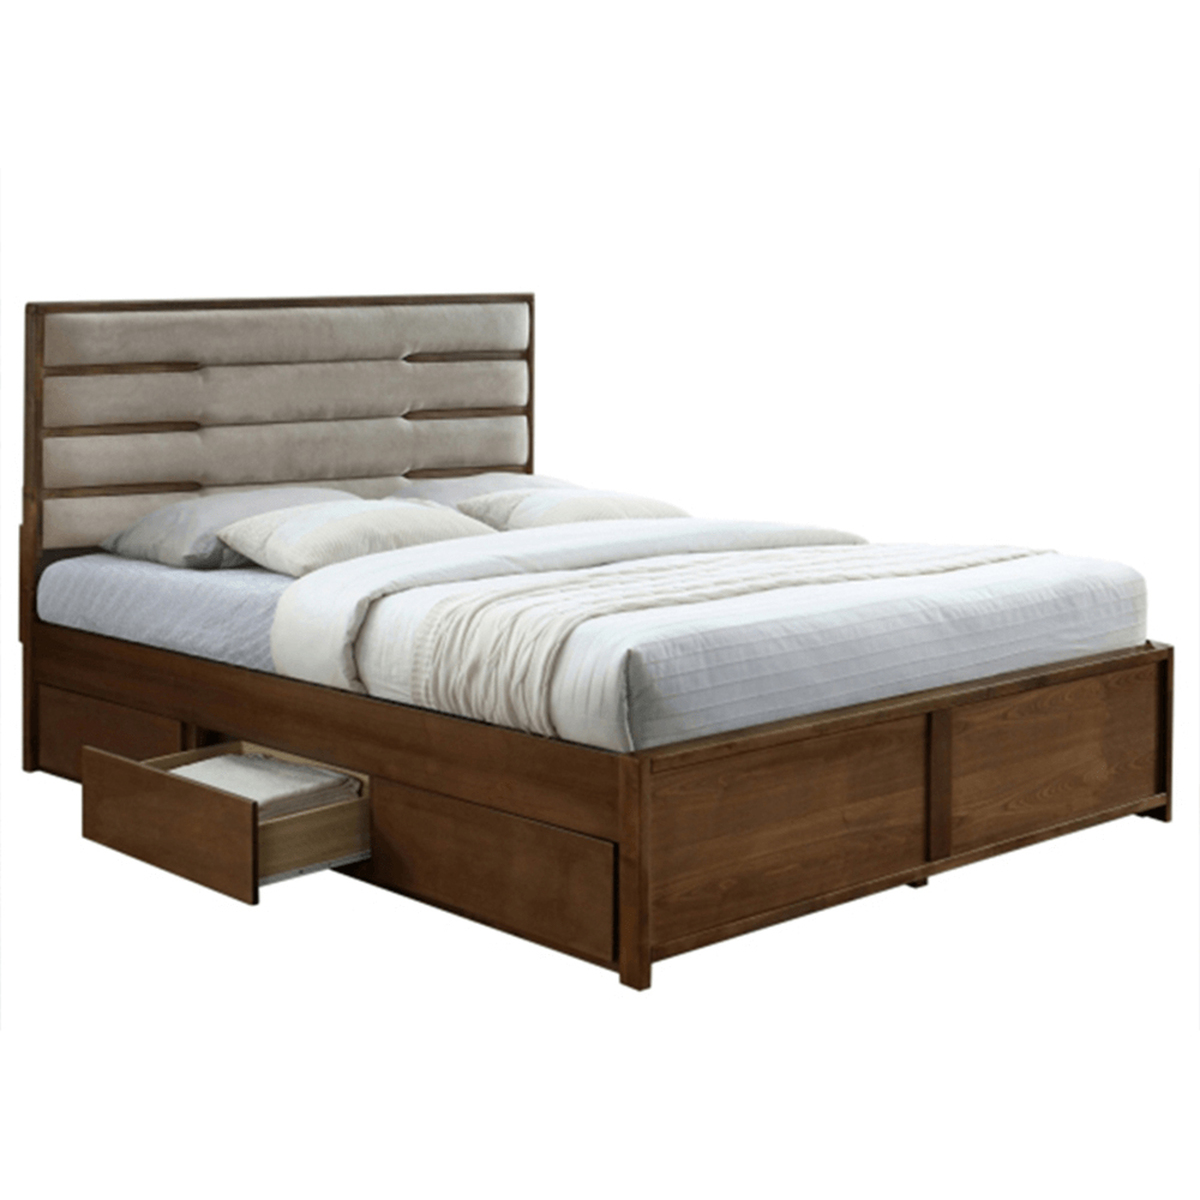 Manželská postel 180 cm Begoa (s roštem) *výprodej